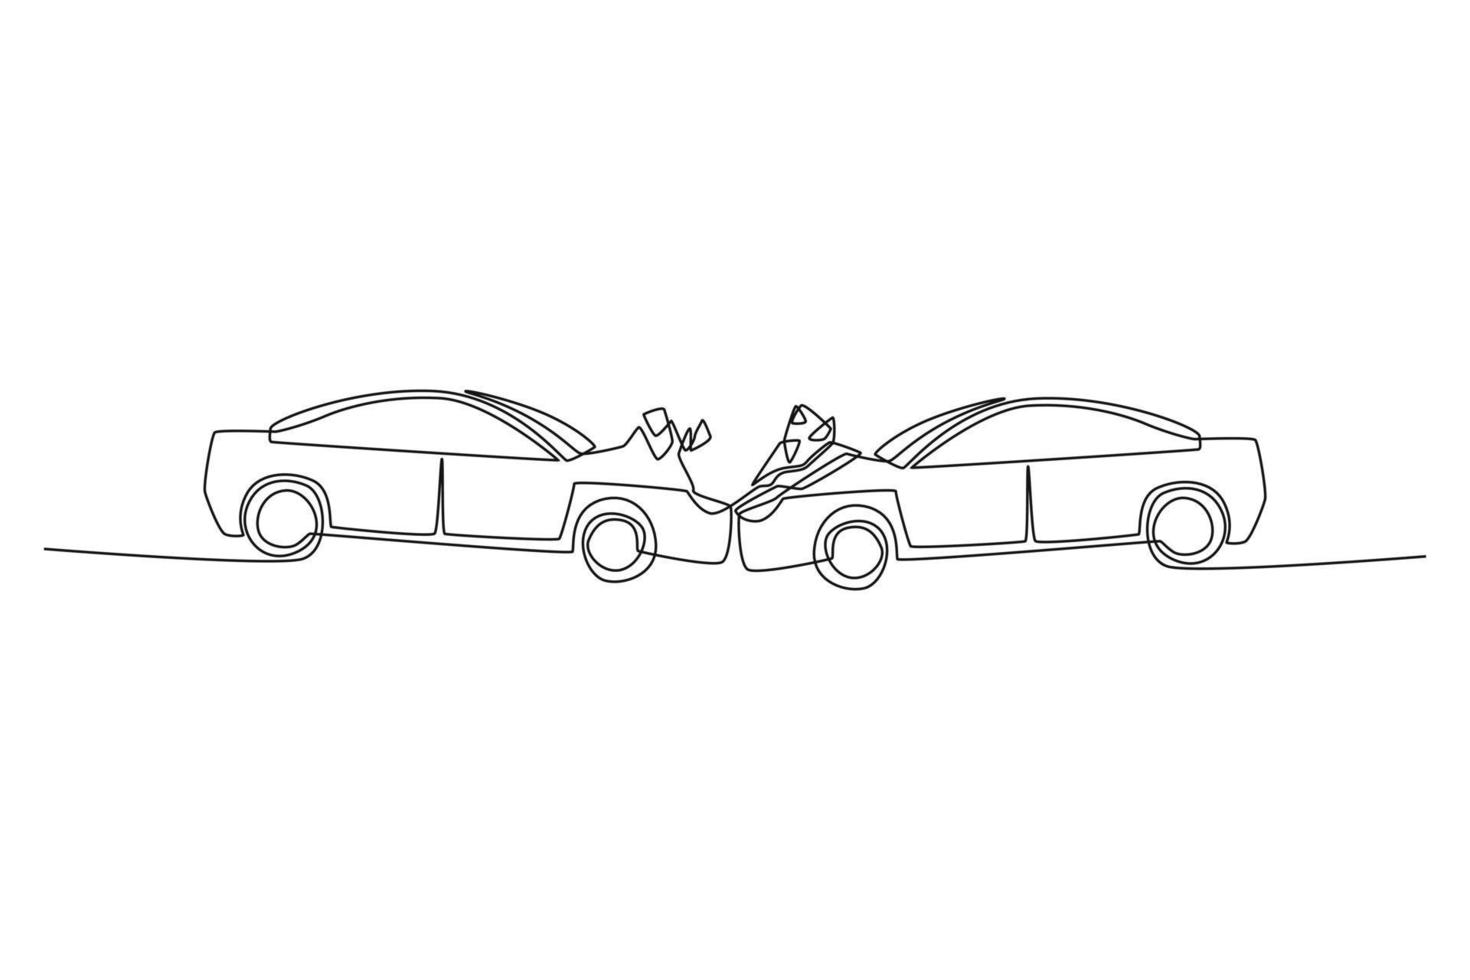 incidente d'auto di un disegno a linea singola sulla strada. concetto di strada e traffico. illustrazione vettoriale grafica di disegno a linea continua.